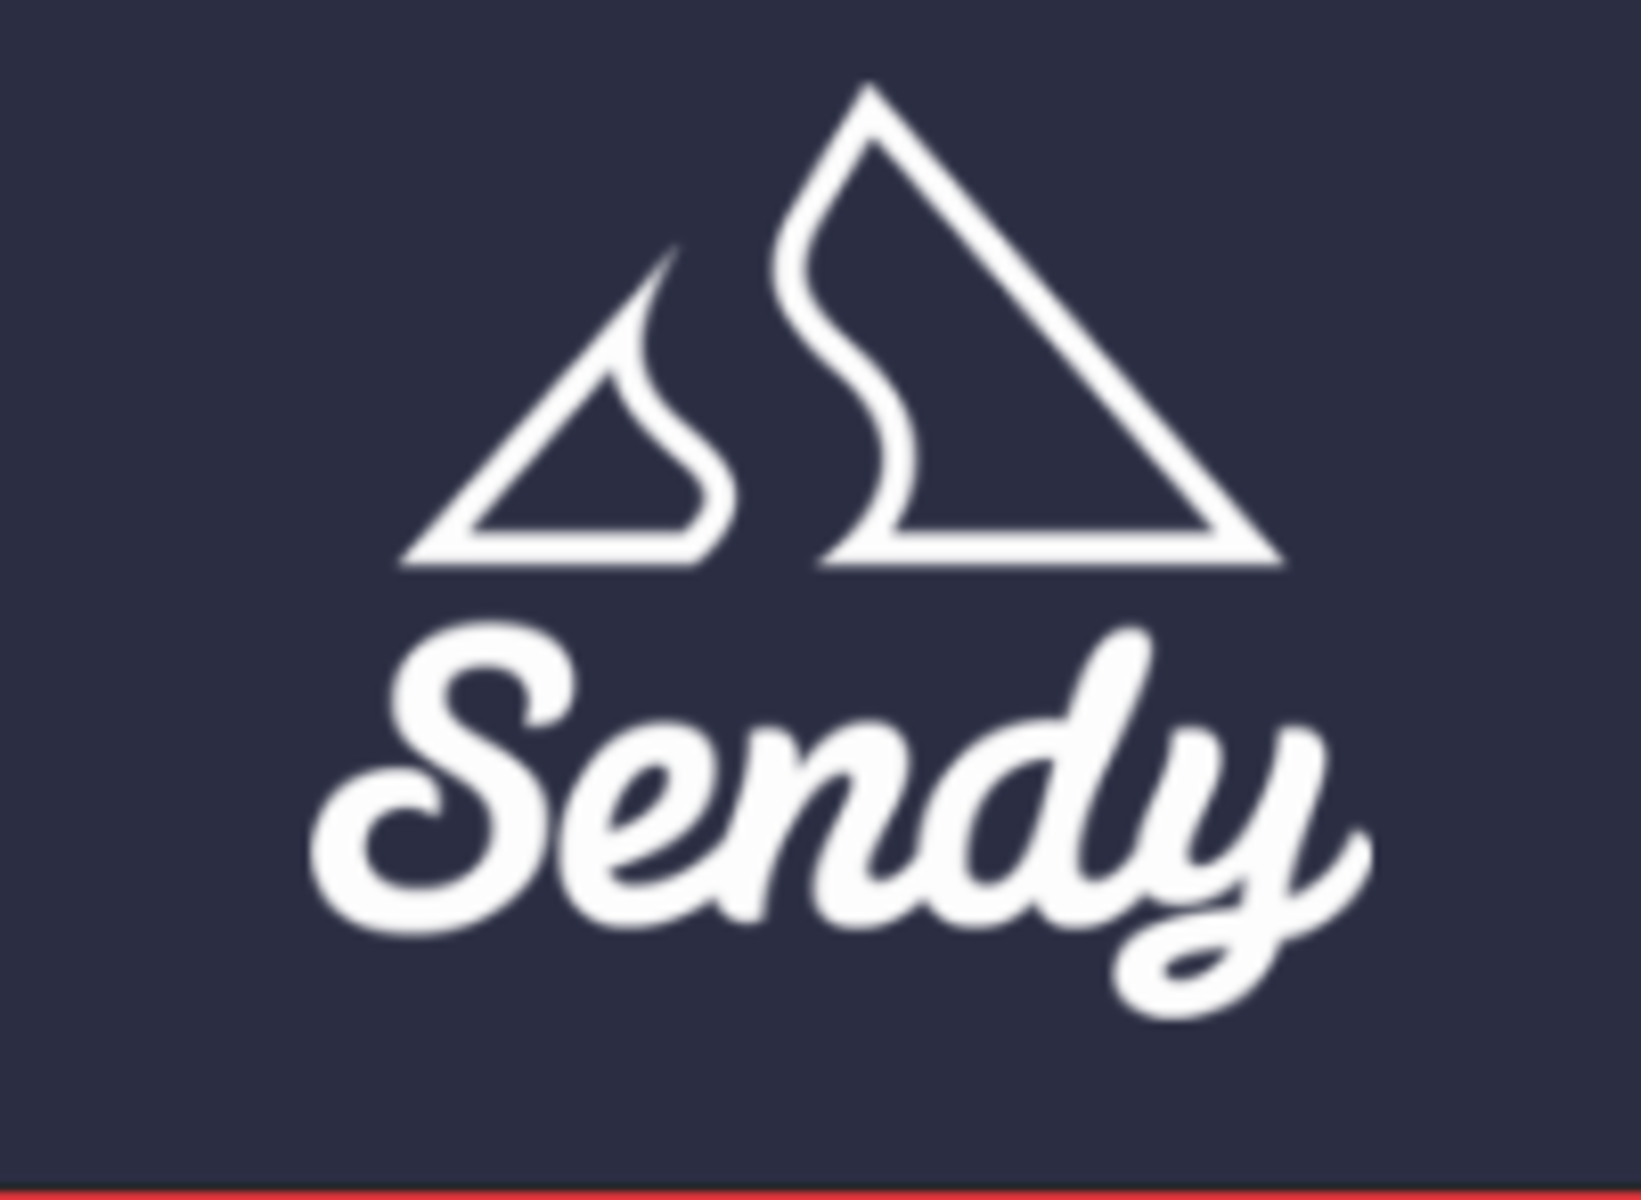 Sendy